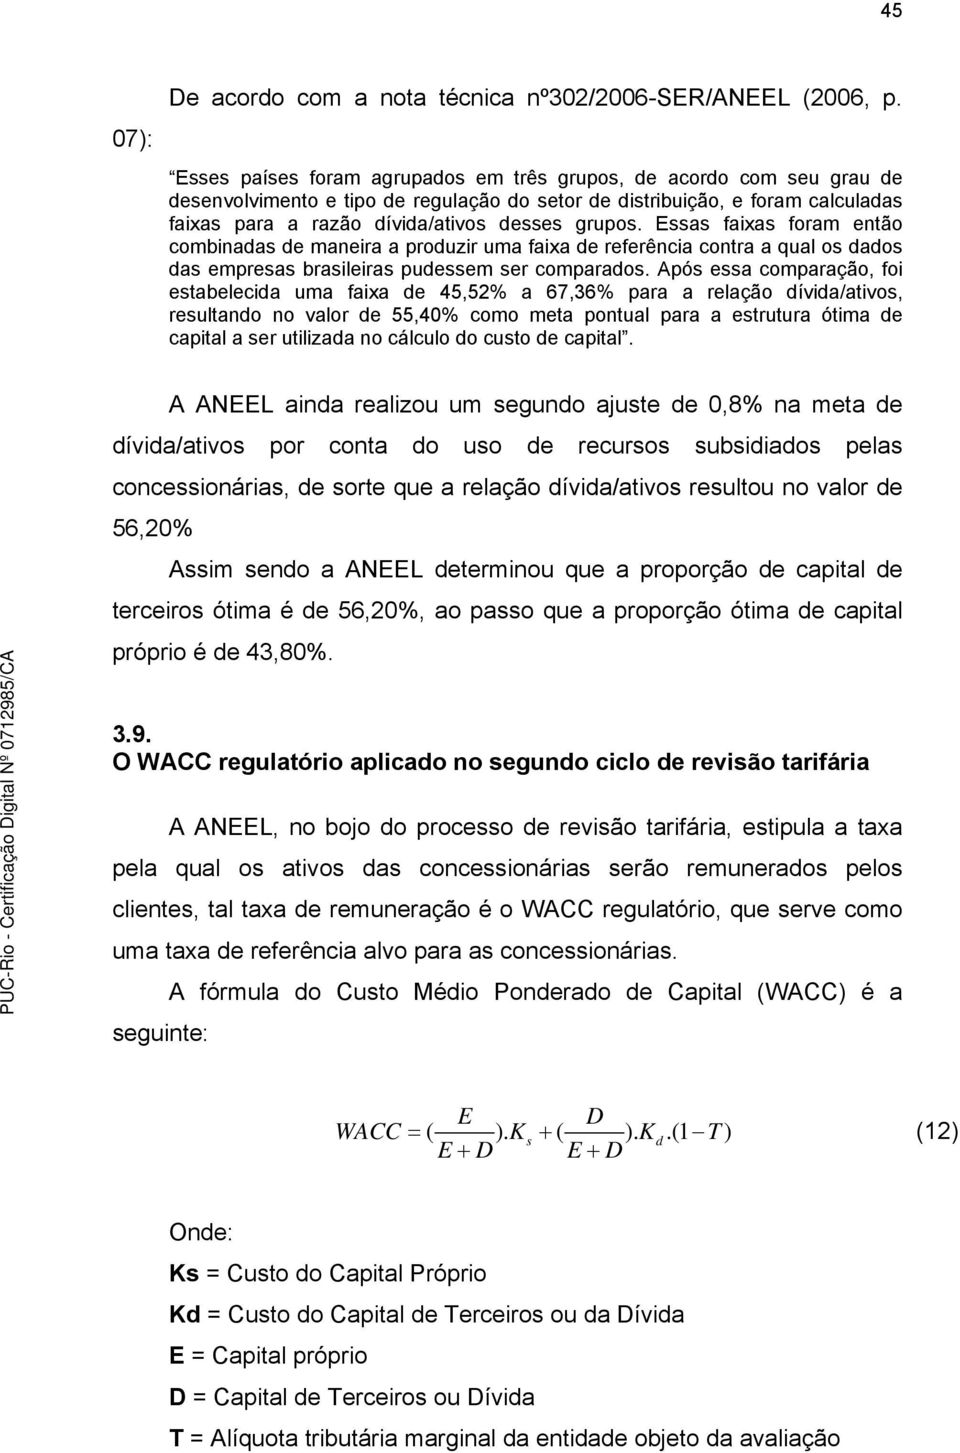 Essas faixas foram então combinadas de maneira a produzir uma faixa de referência contra a qual os dados das empresas brasileiras pudessem ser comparados.